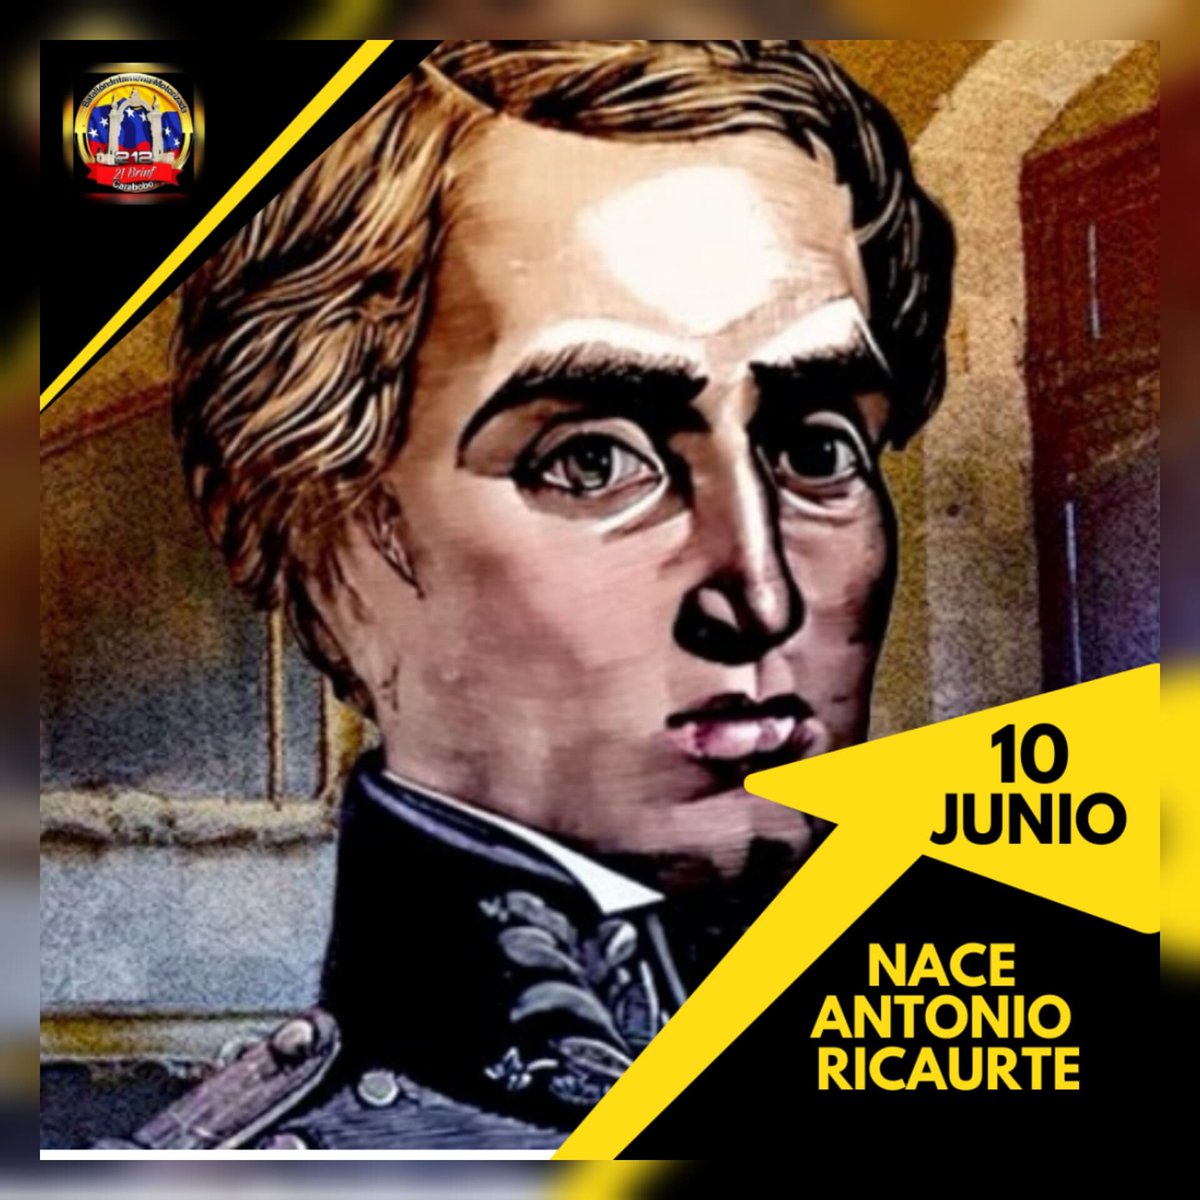 #Efeméride. Tal día como hoy #01deJunio nace en la hermana República de Colombia el militar Antonio Ricaurte quien luchó por la independencia nuestra del imperio español.
#FANBESSOBERANIA
#21brigadadeinfantería
#212BIMCARABOBO